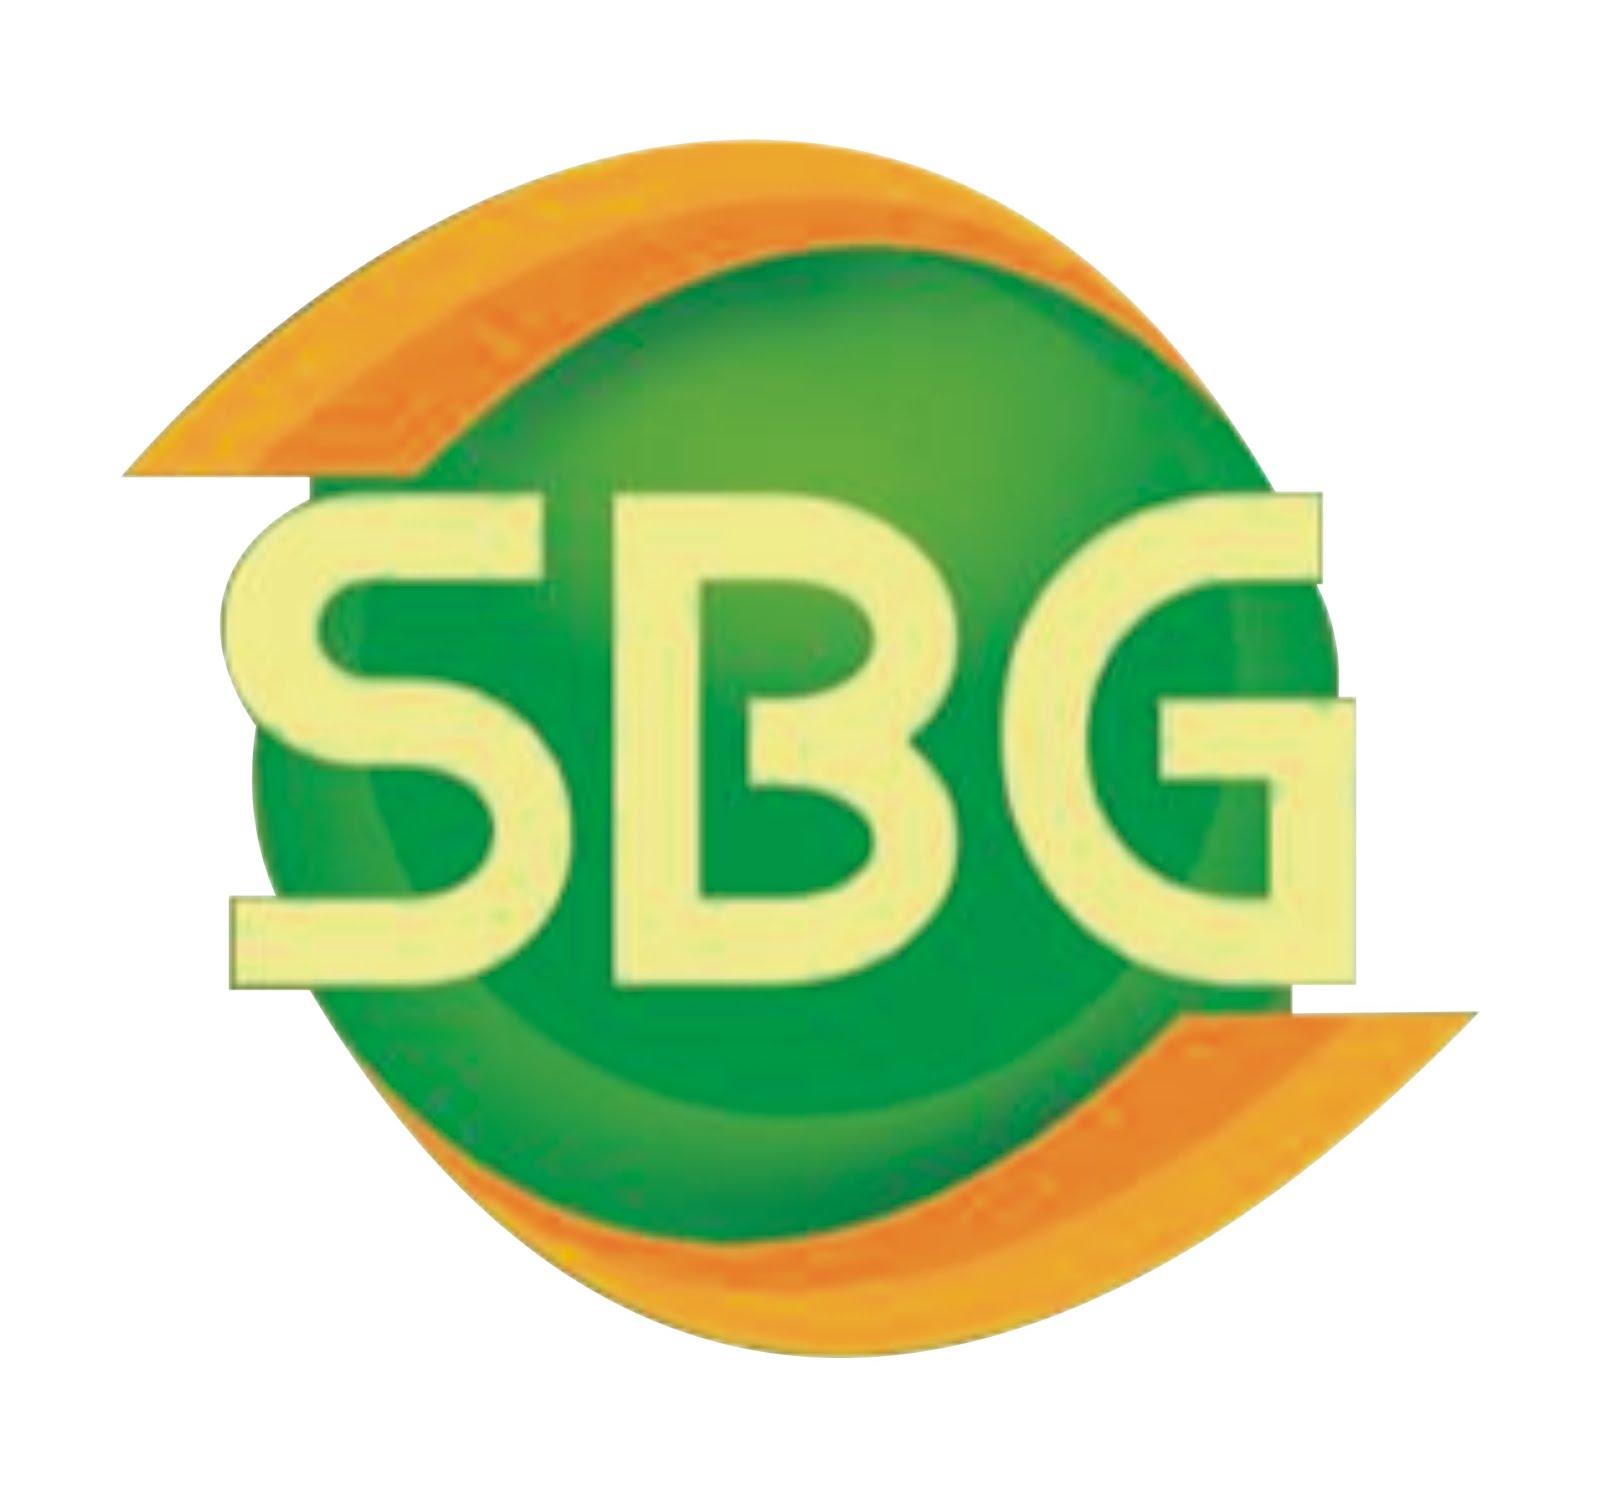 www.sbgbali.com